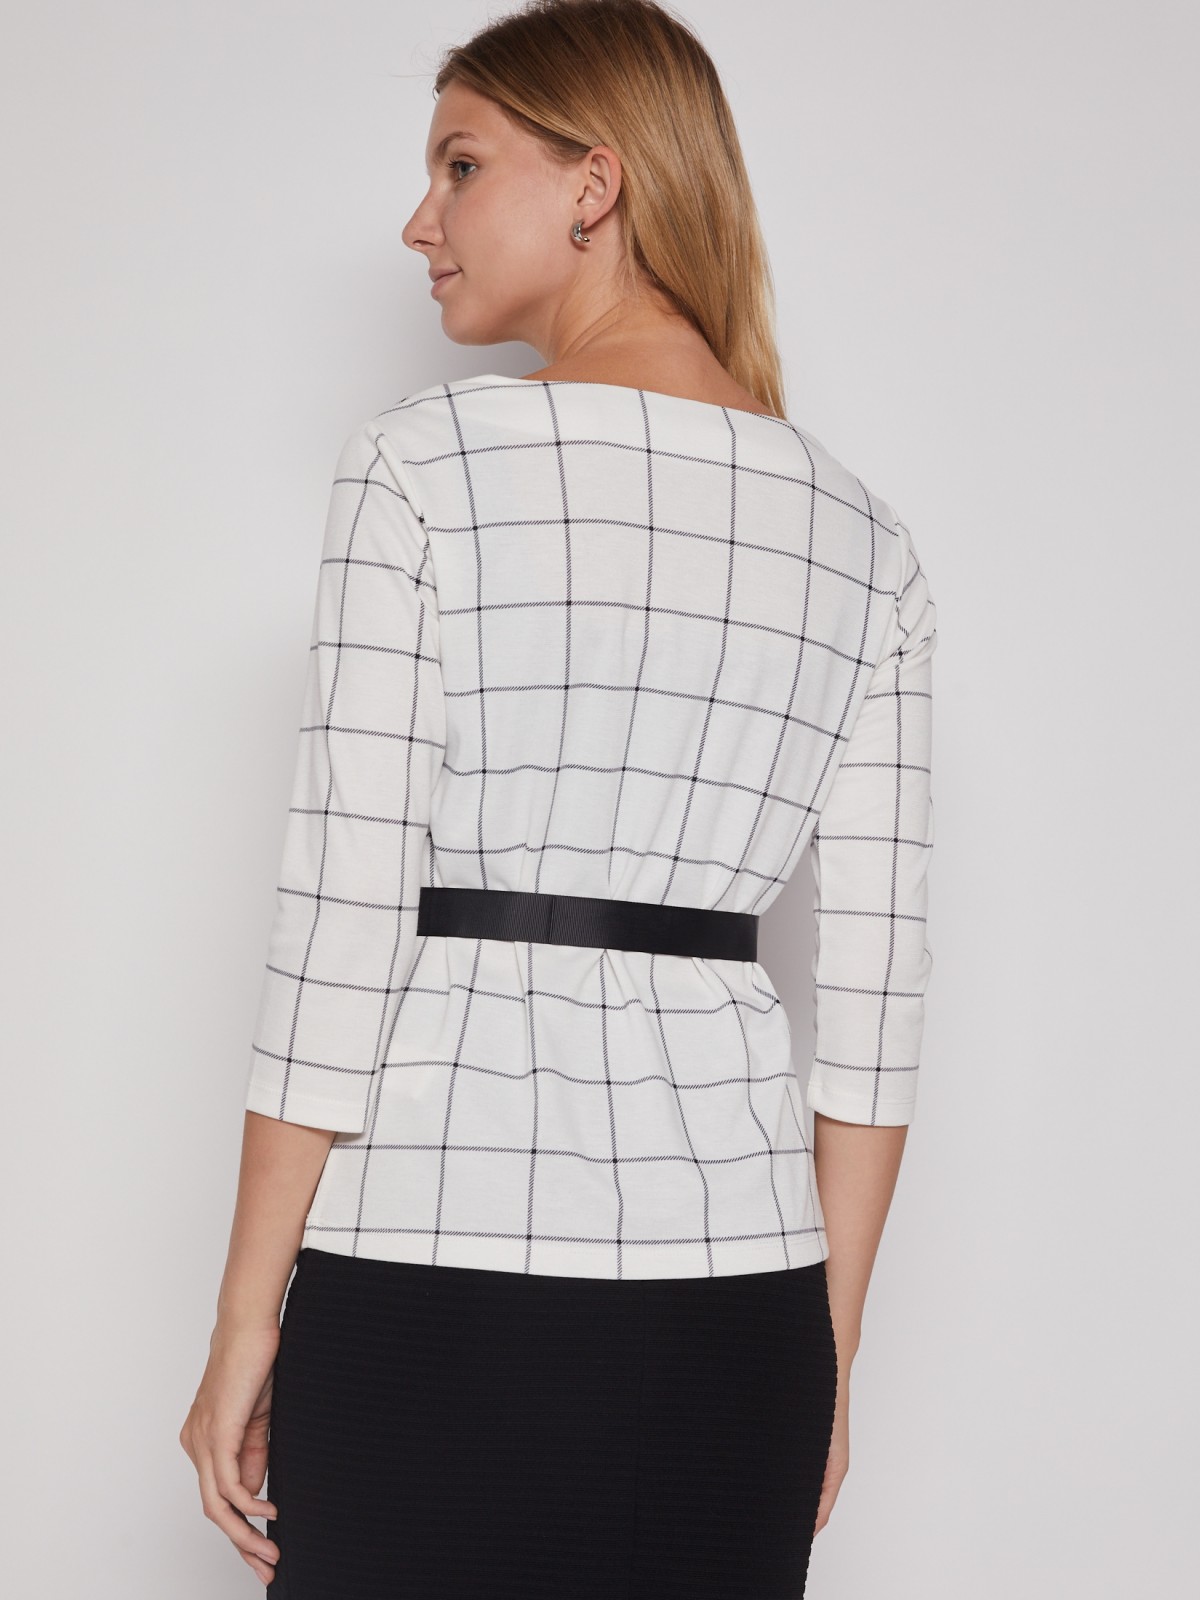 Трикотажная блузка с поясом zolla 022113110023, цвет белый, размер XS - фото 6